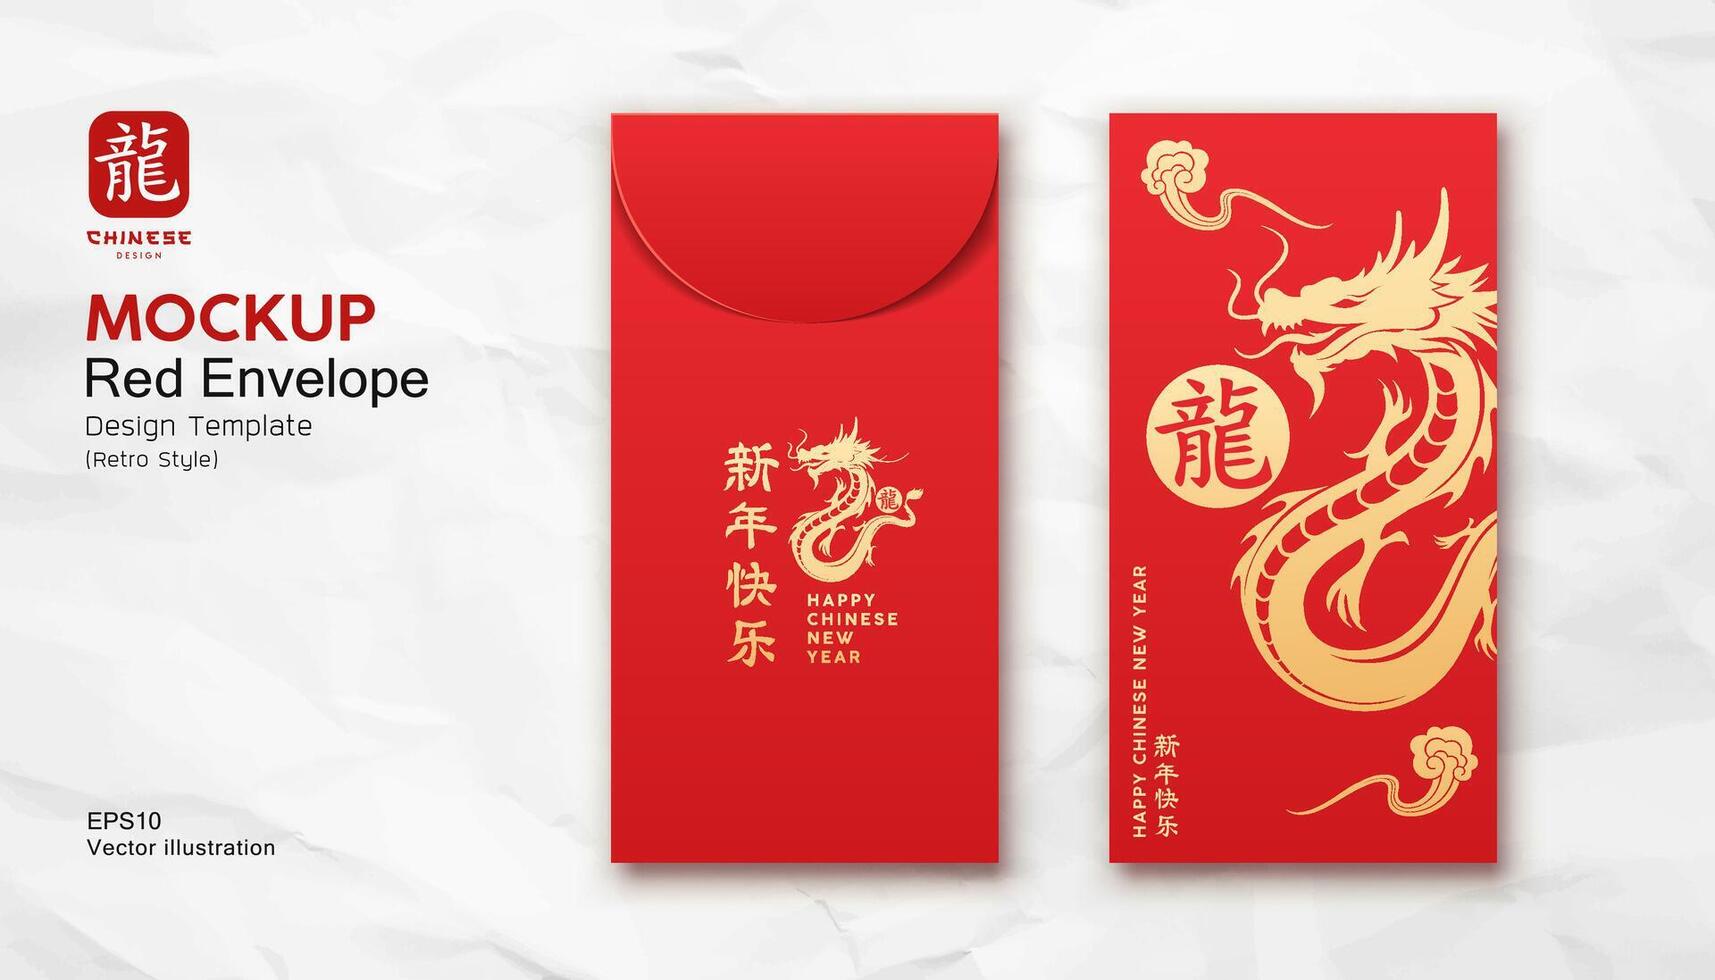 rojo sobre burlarse de arriba, ang pao chino nuevo año continuar oro color retro estilo diseño, personajes Traducción continuar y contento nuevo año, en blanco arrugado papel, eps10 vector ilustración.